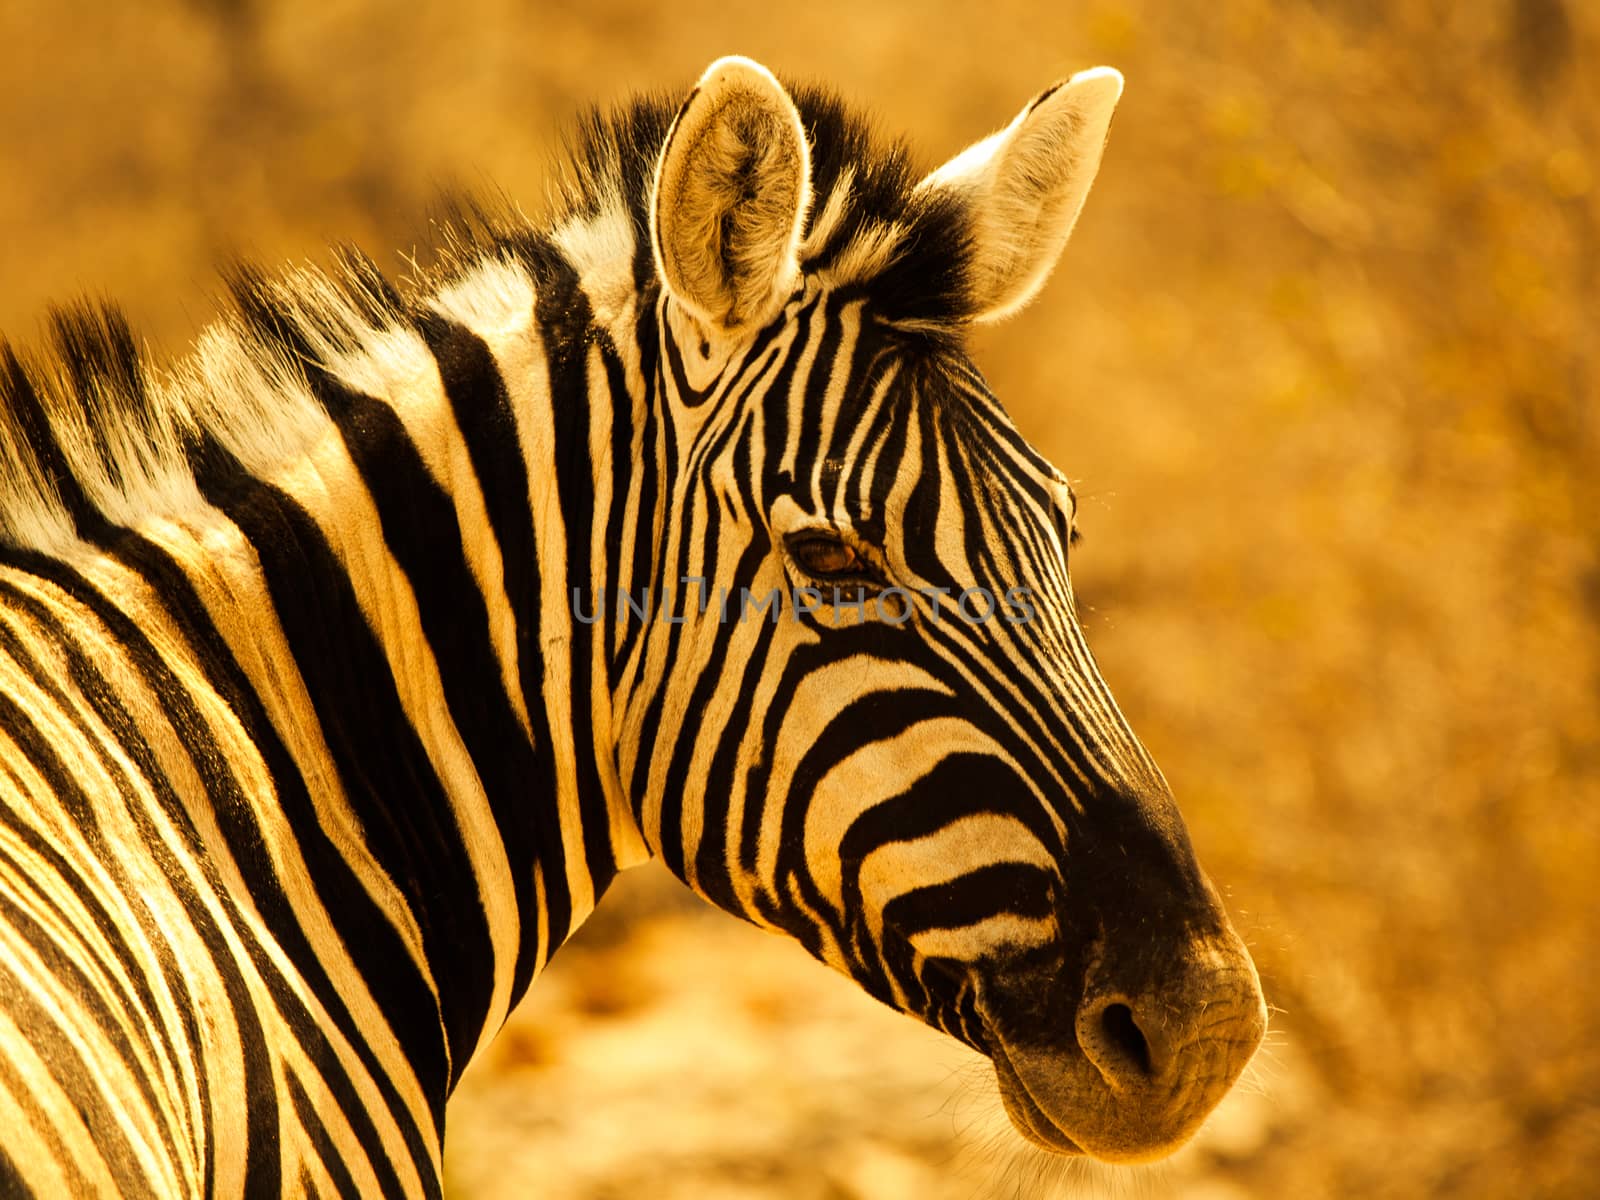 Zebra portrait by pyty